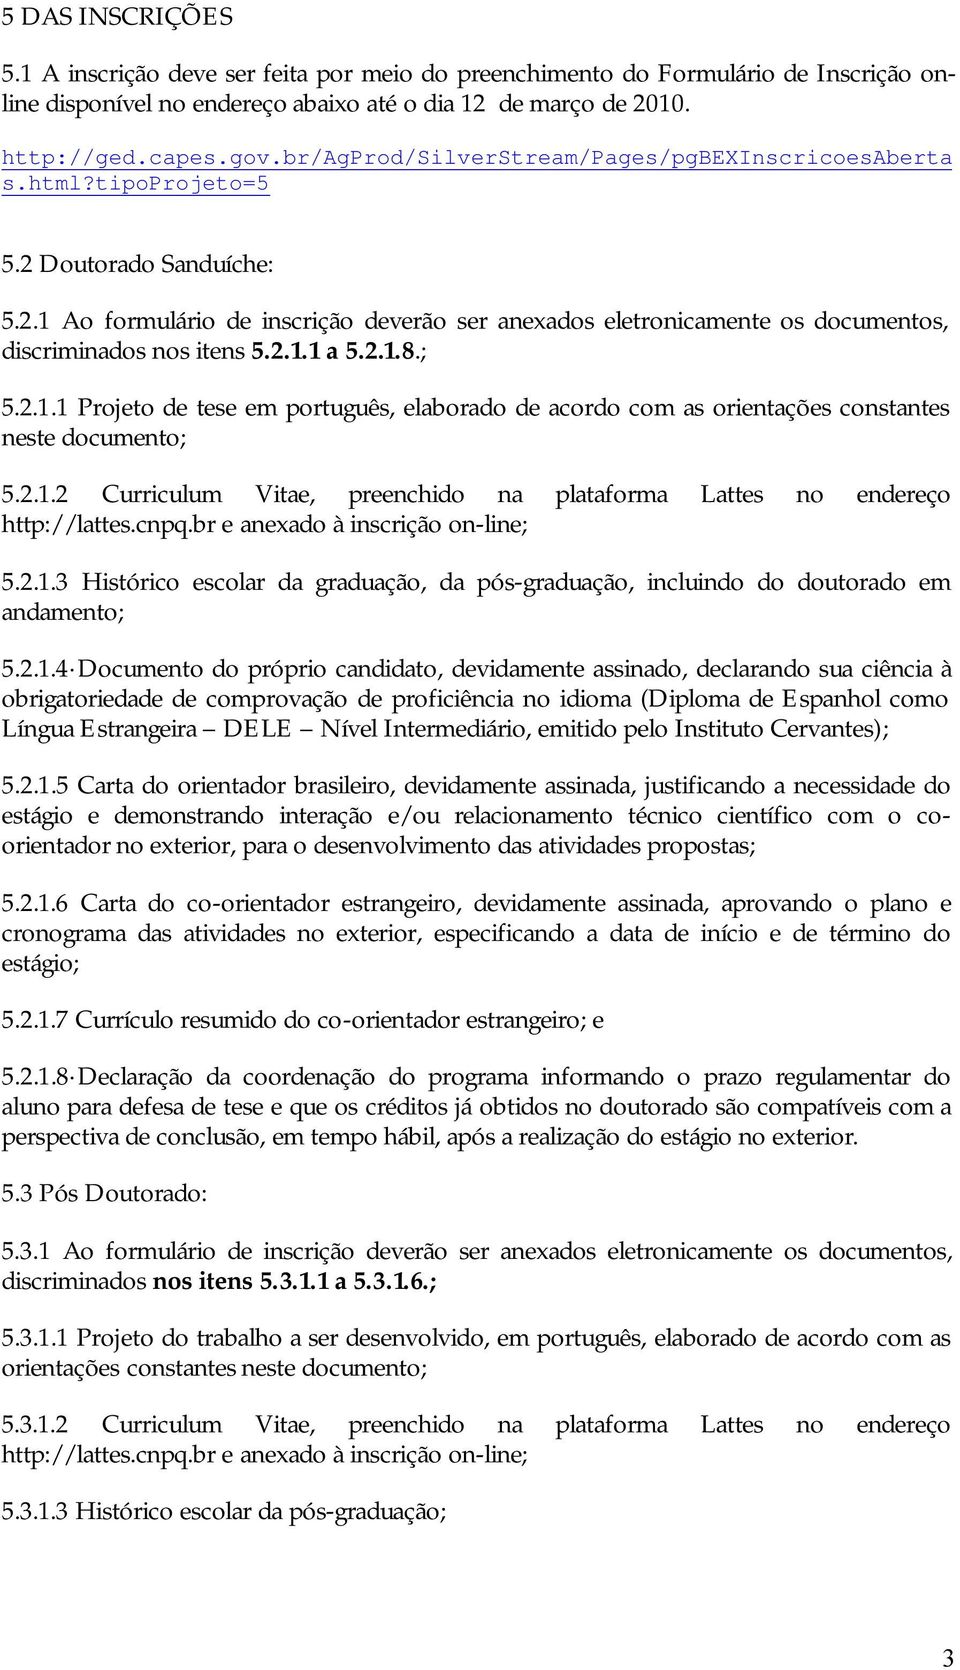 2.1.1 a 5.2.1.8.; 5.2.1.1 Projeto de tese em português, elaborado de acordo com as orientações constantes neste documento; 5.2.1.2 Curriculum Vitae, preenchido na plataforma Lattes no endereço http://lattes.